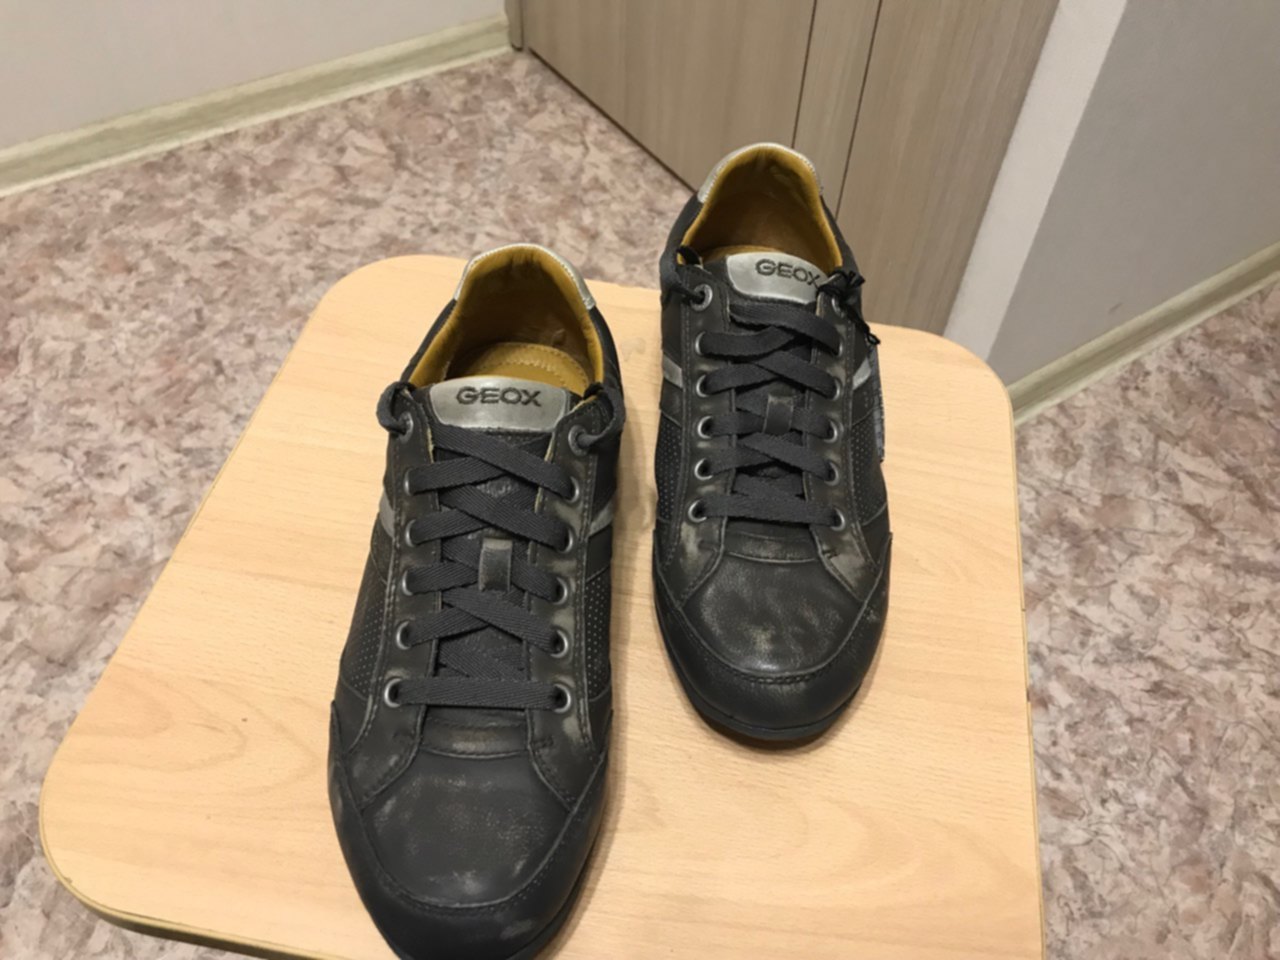 Итальянские кроссовки мужские. Итальянская обувь геокс. Геокс зимние ботинки 41 размер. Туфли итальянские черные 41 размер.